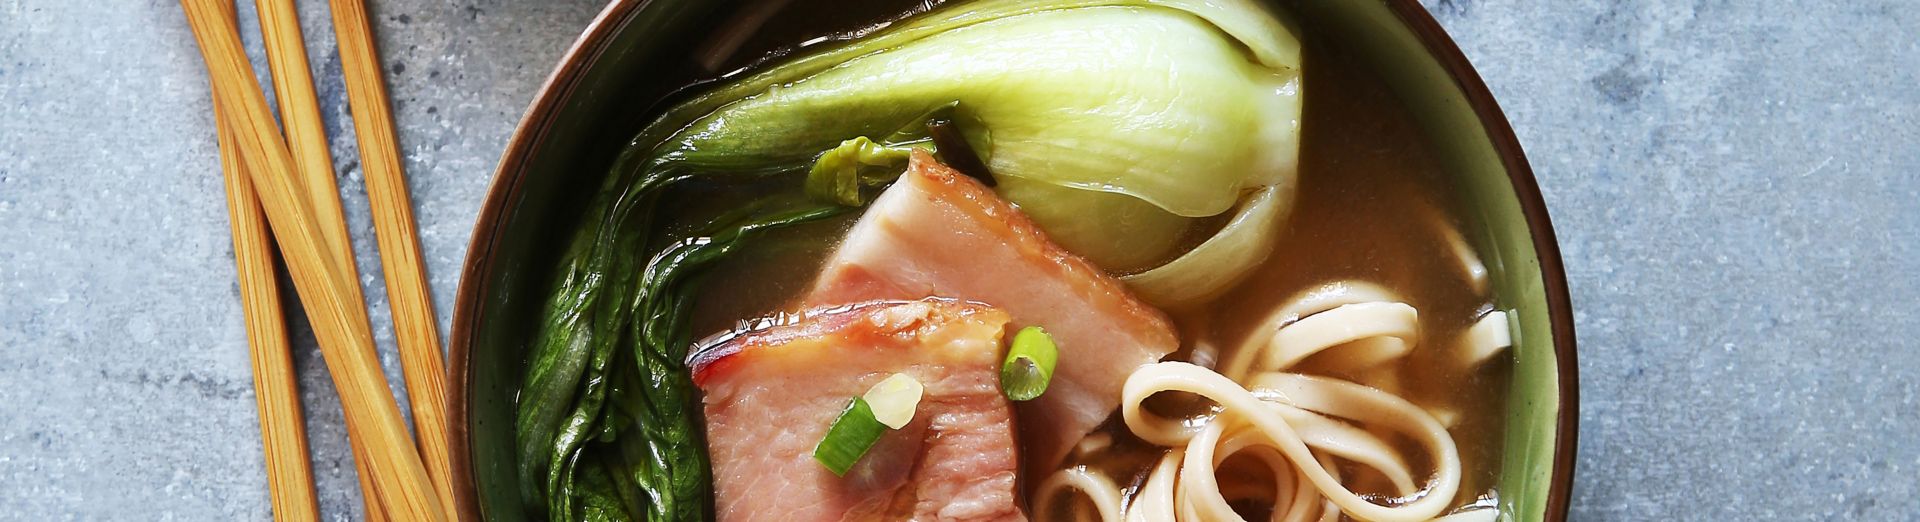 Soupe de nouilles udon dans des bols représentant les bases de soupes élaborées par TEWAY